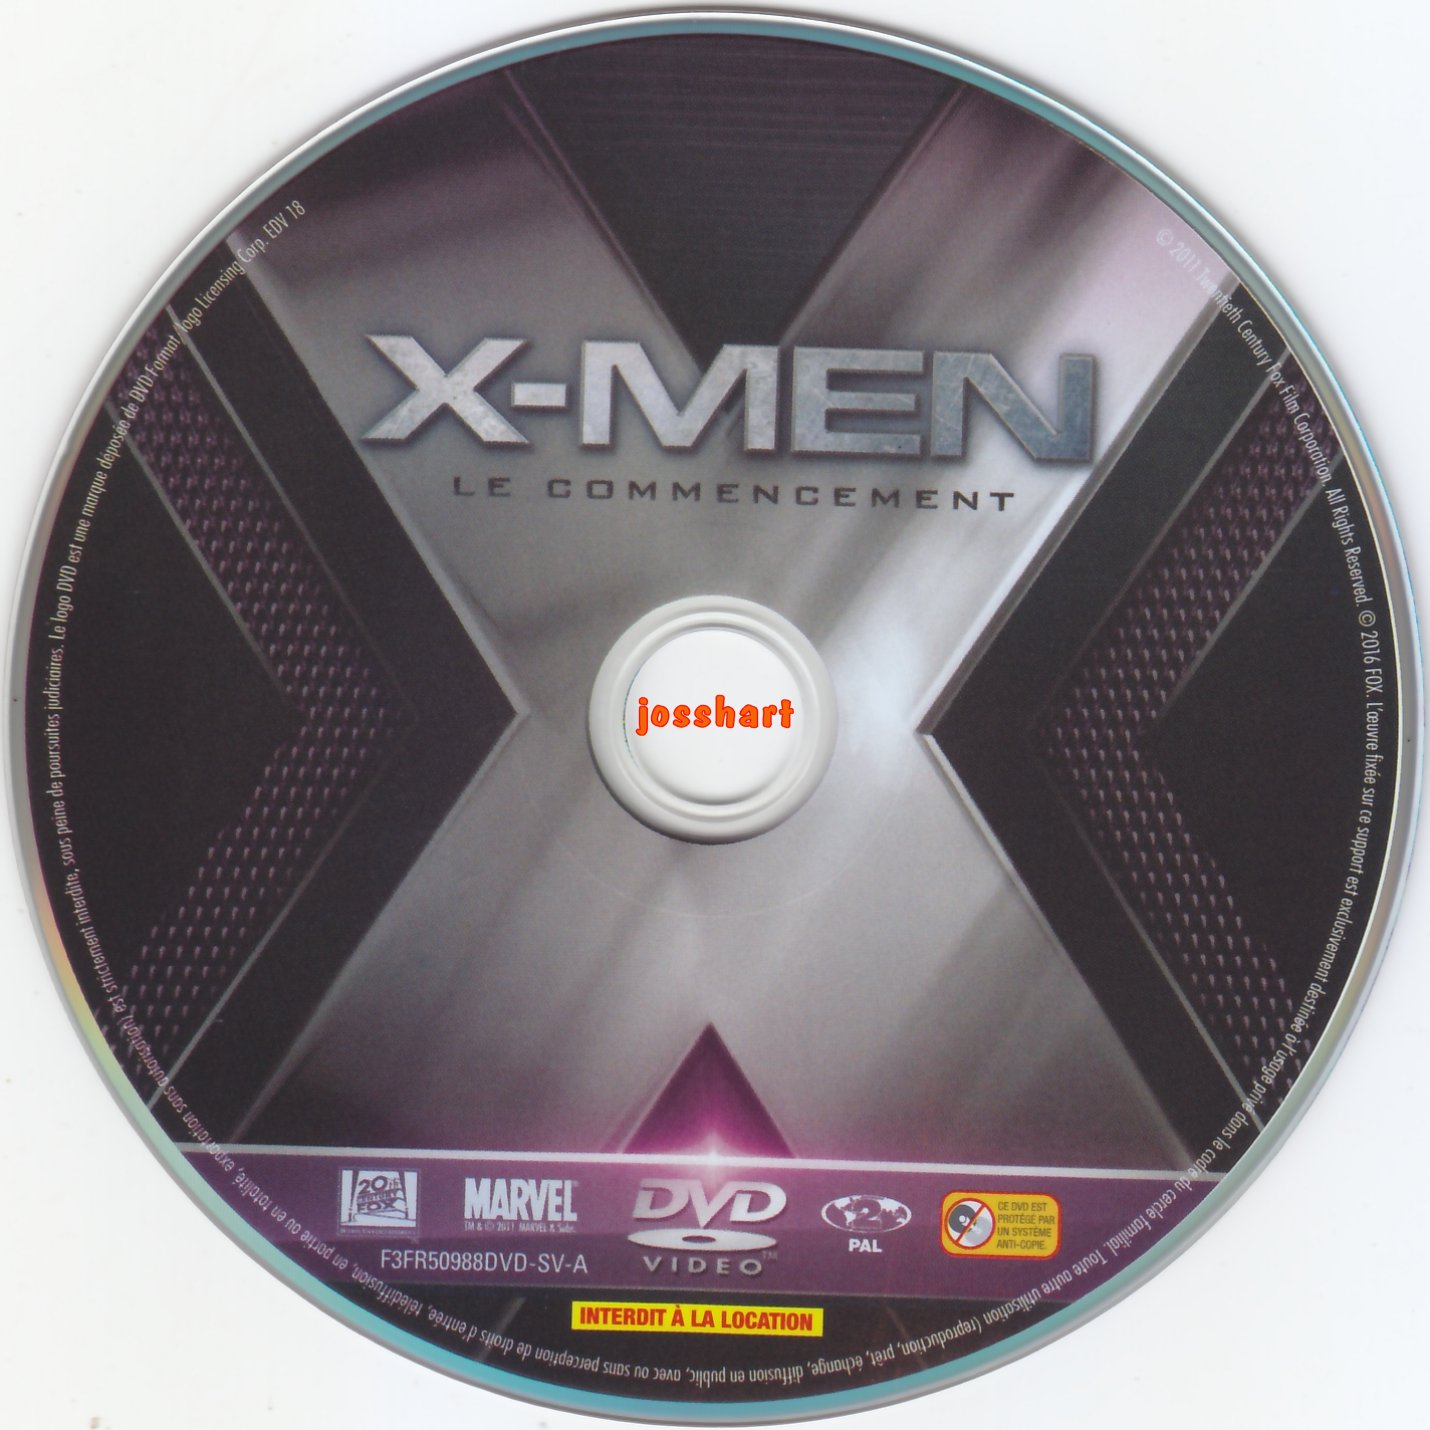 X-Men Le commencement v2